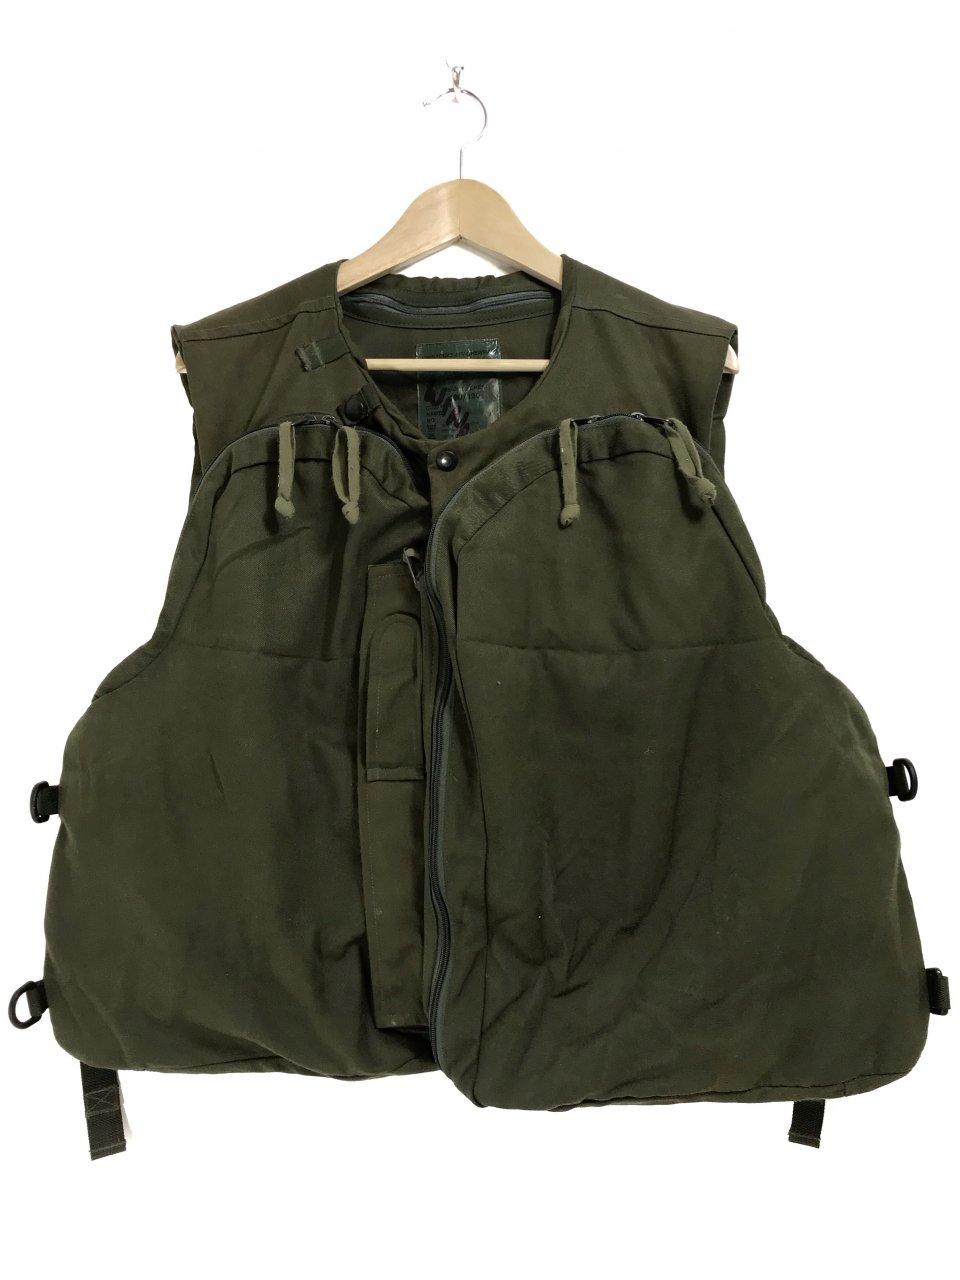 99年 UK Military AFV Combat Body Armor Vest #2 オリーブ 190/120 